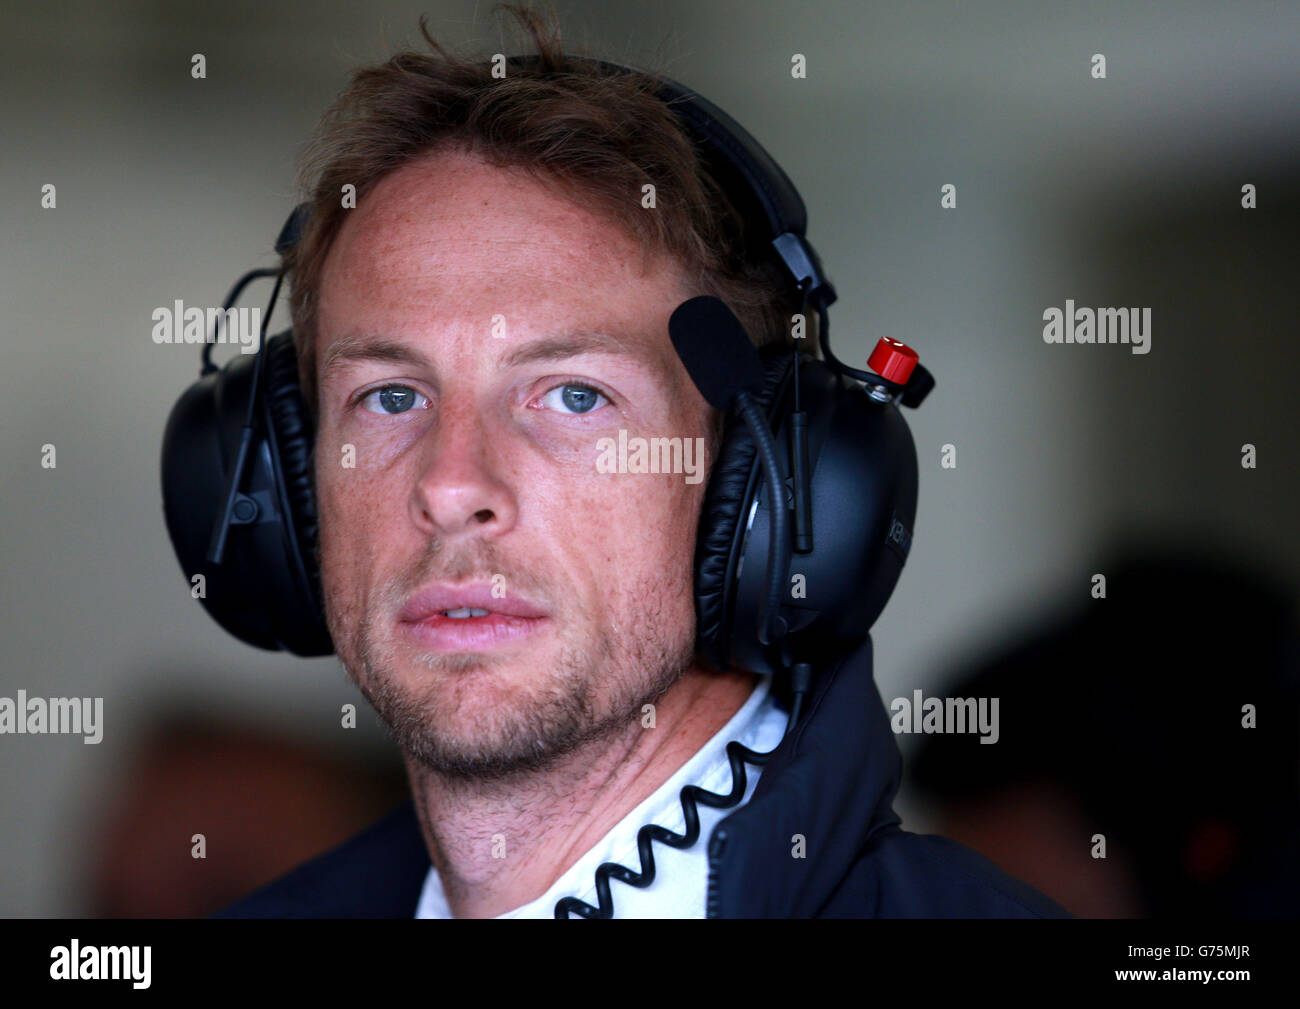 McLaren's Jenson Button durante le prove tre per il Gran Premio di Gran Bretagna 2014 al circuito di Silverstone, Towcester. PREMERE ASSOCIASTION Photo. Data immagine: Sabato 5 luglio 2014. Vedere PA storia AUTO British. Il credito fotografico dovrebbe essere: David Davies/PA Wire. Foto Stock